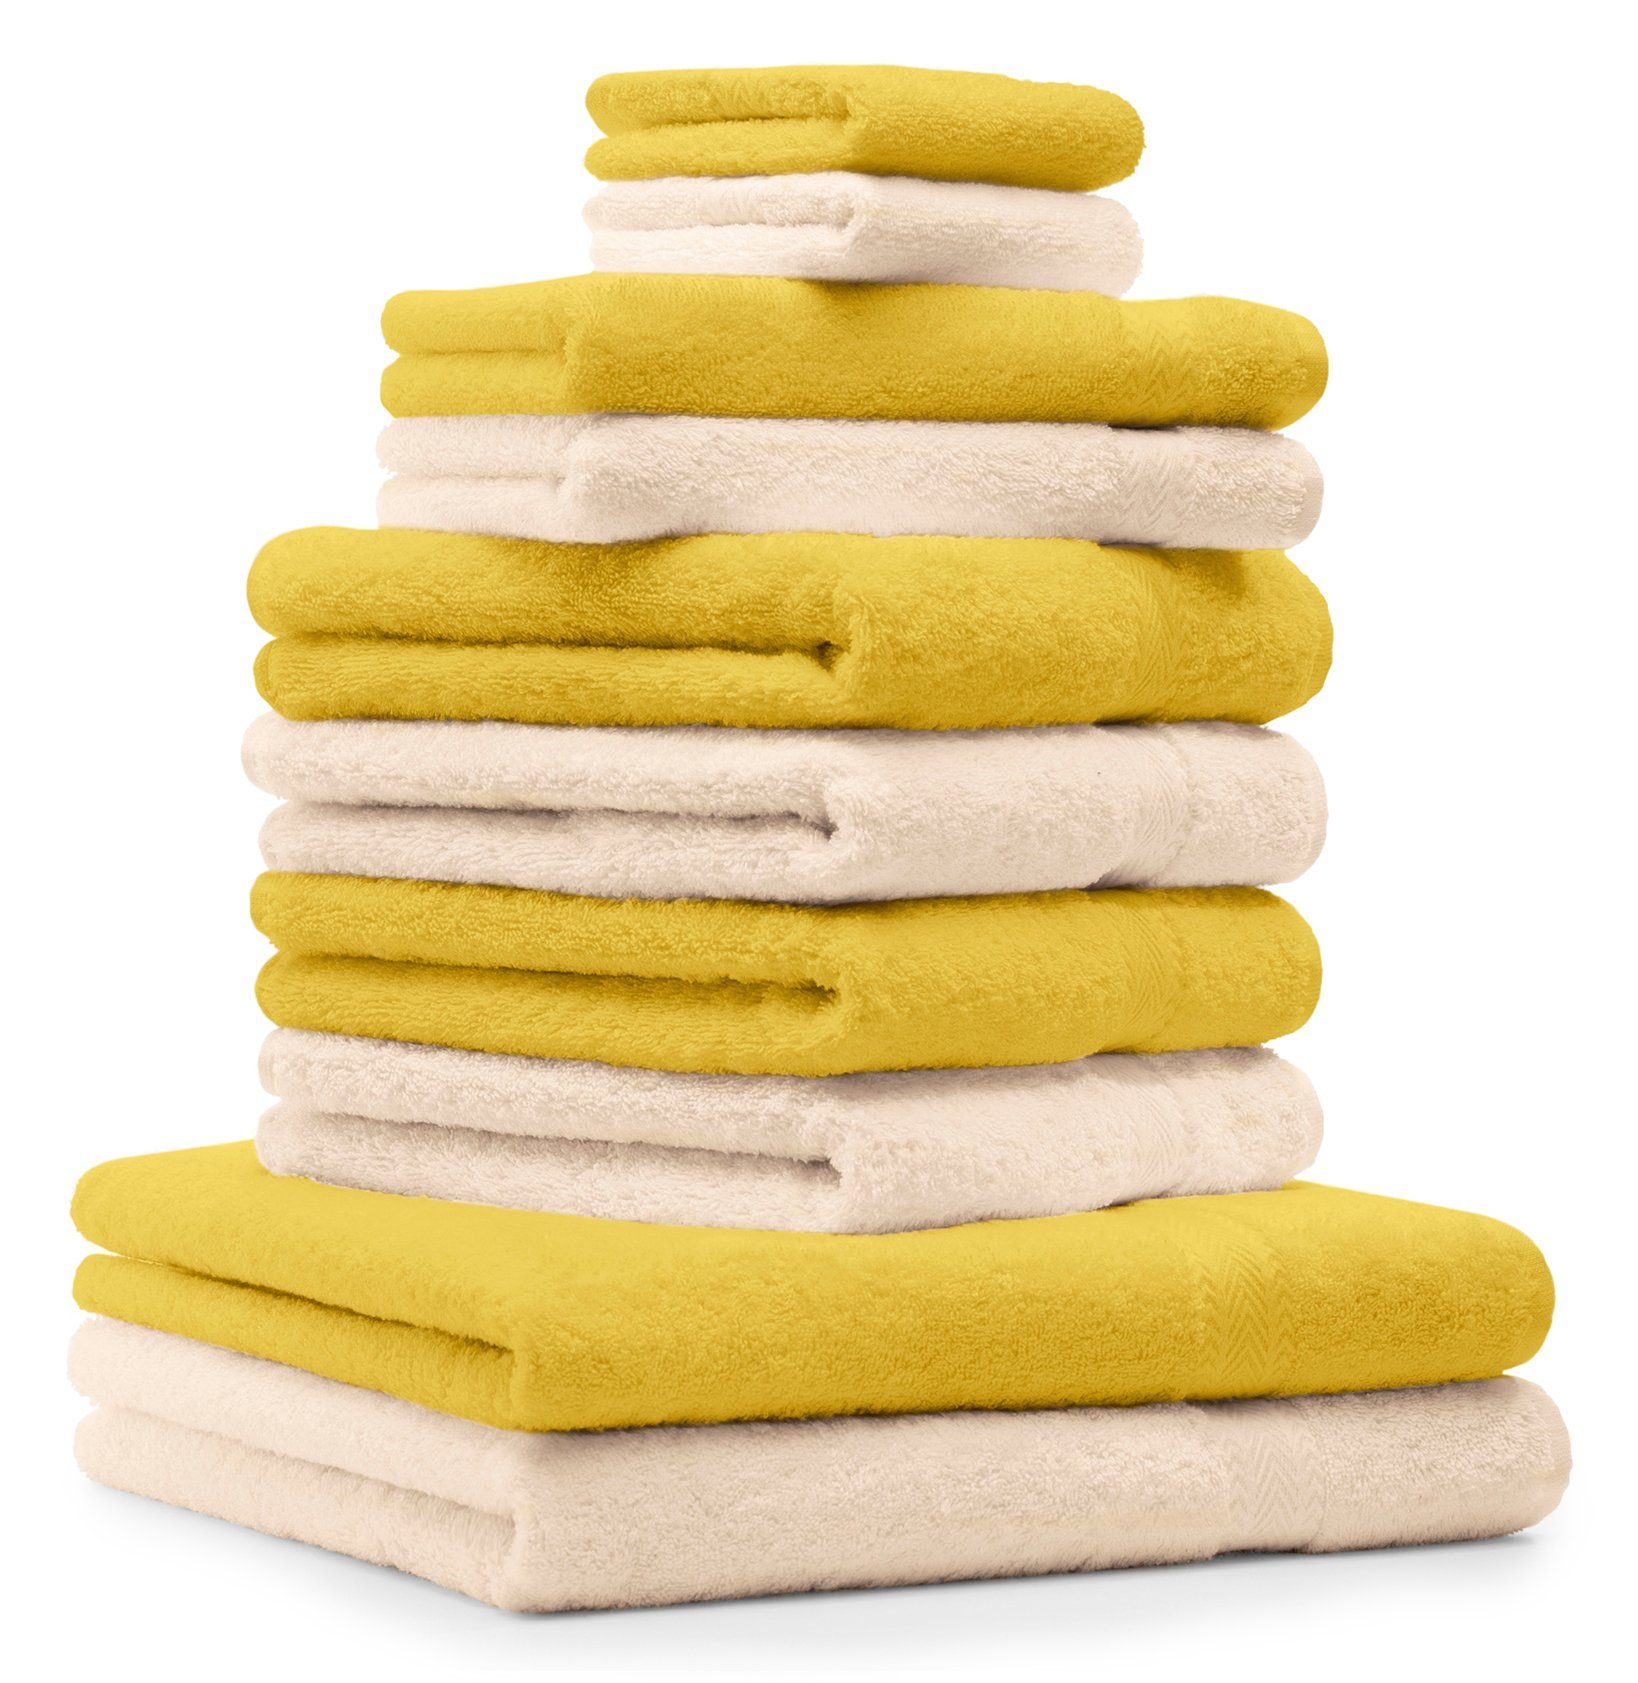 Betz Handtuch Set 10-TLG. Handtuch-Set Classic 100% Baumwolle Farbe gelb & beige, 100% Baumwolle